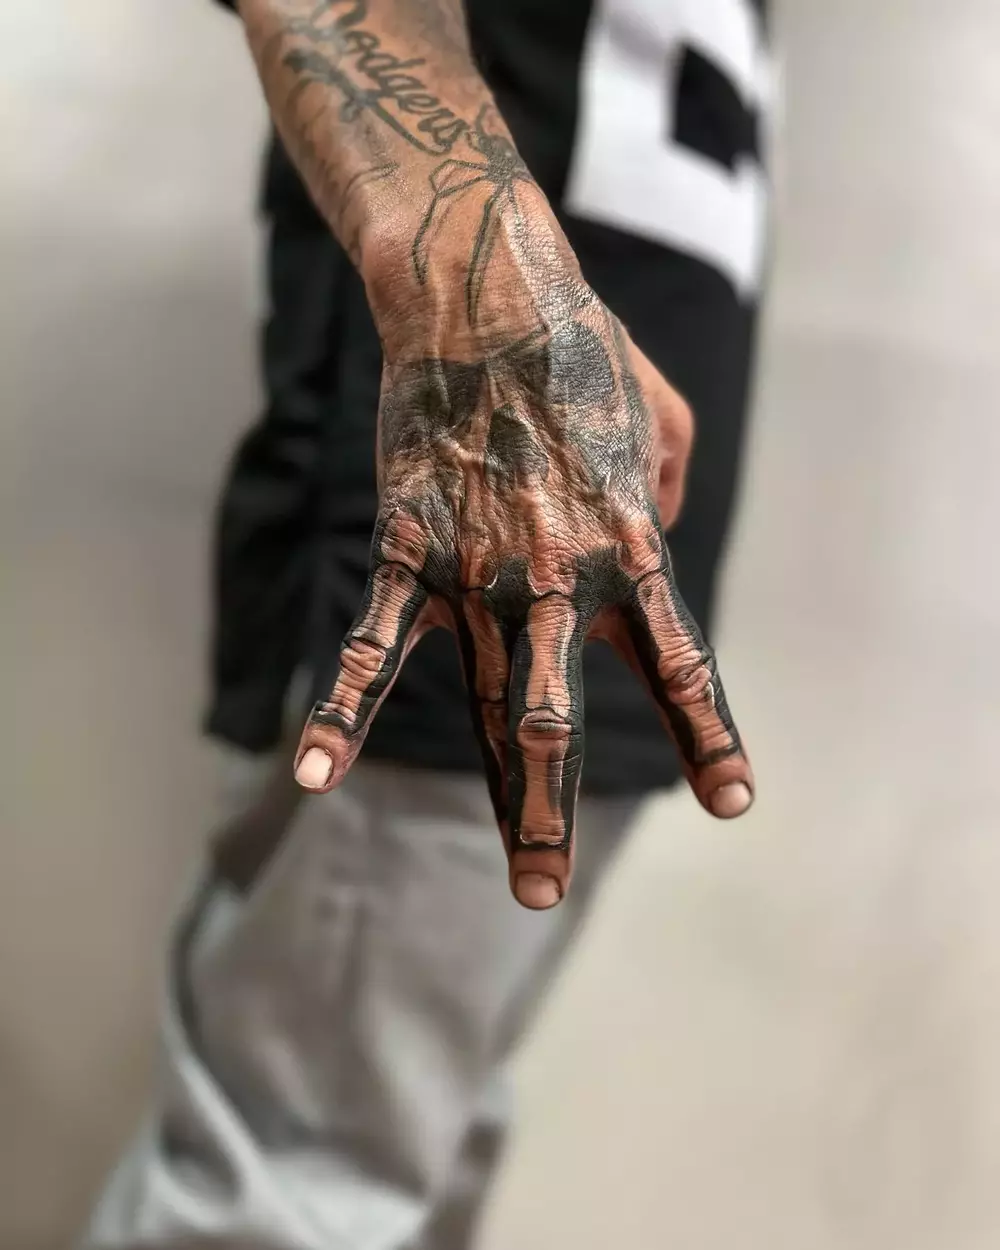 Blackwork Skeleton Hand Tattoo for Men